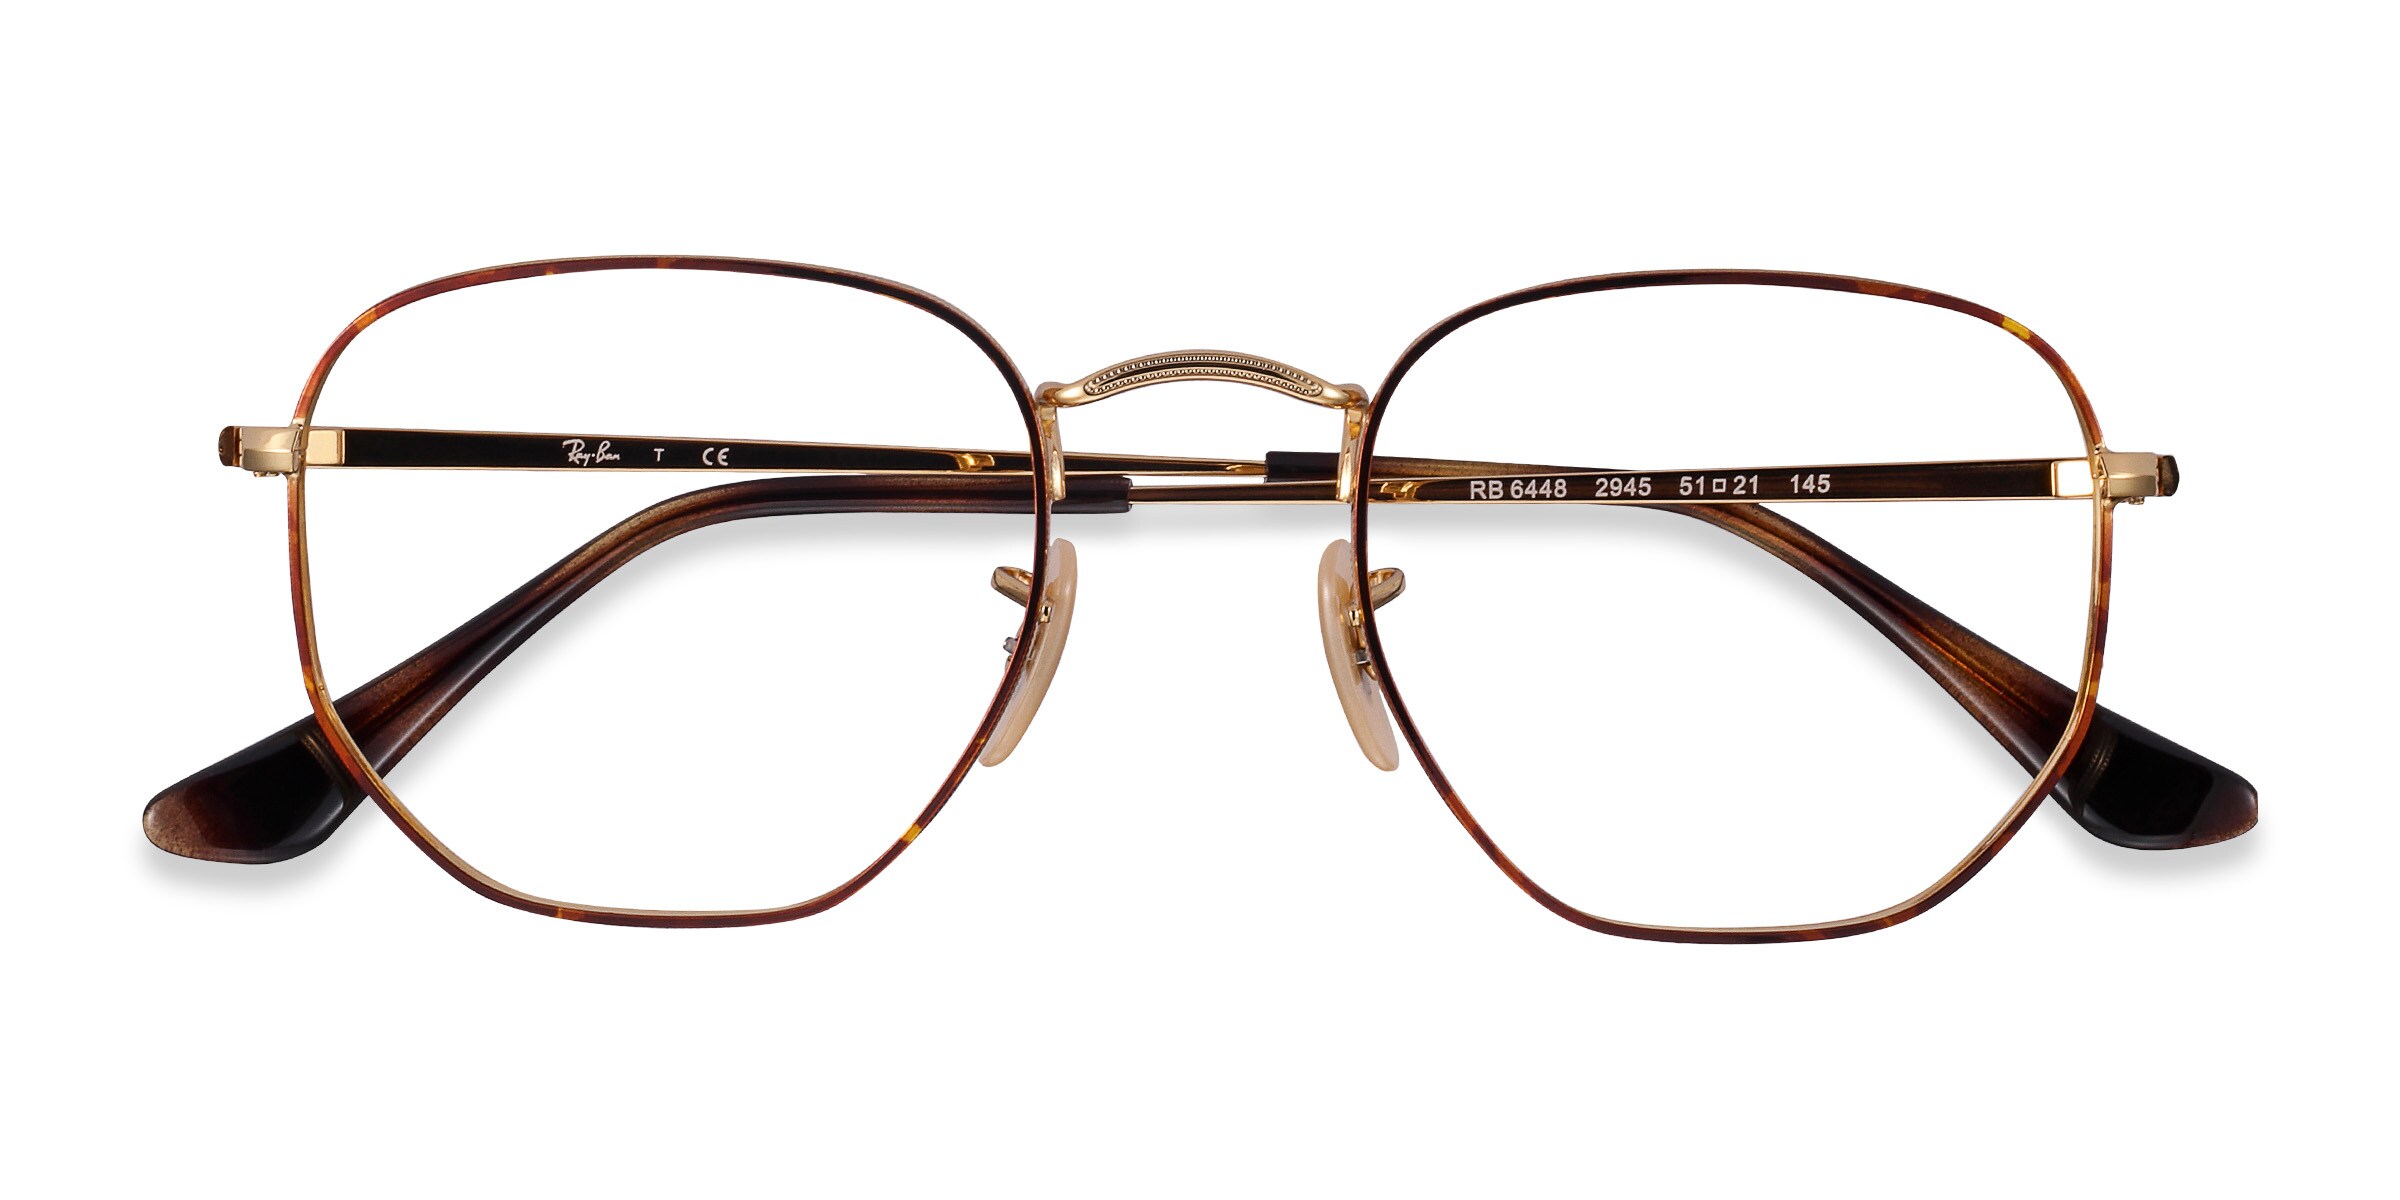 Ray-Ban RB6448 - Square Tortoise Gold Frame Eyeglasses 